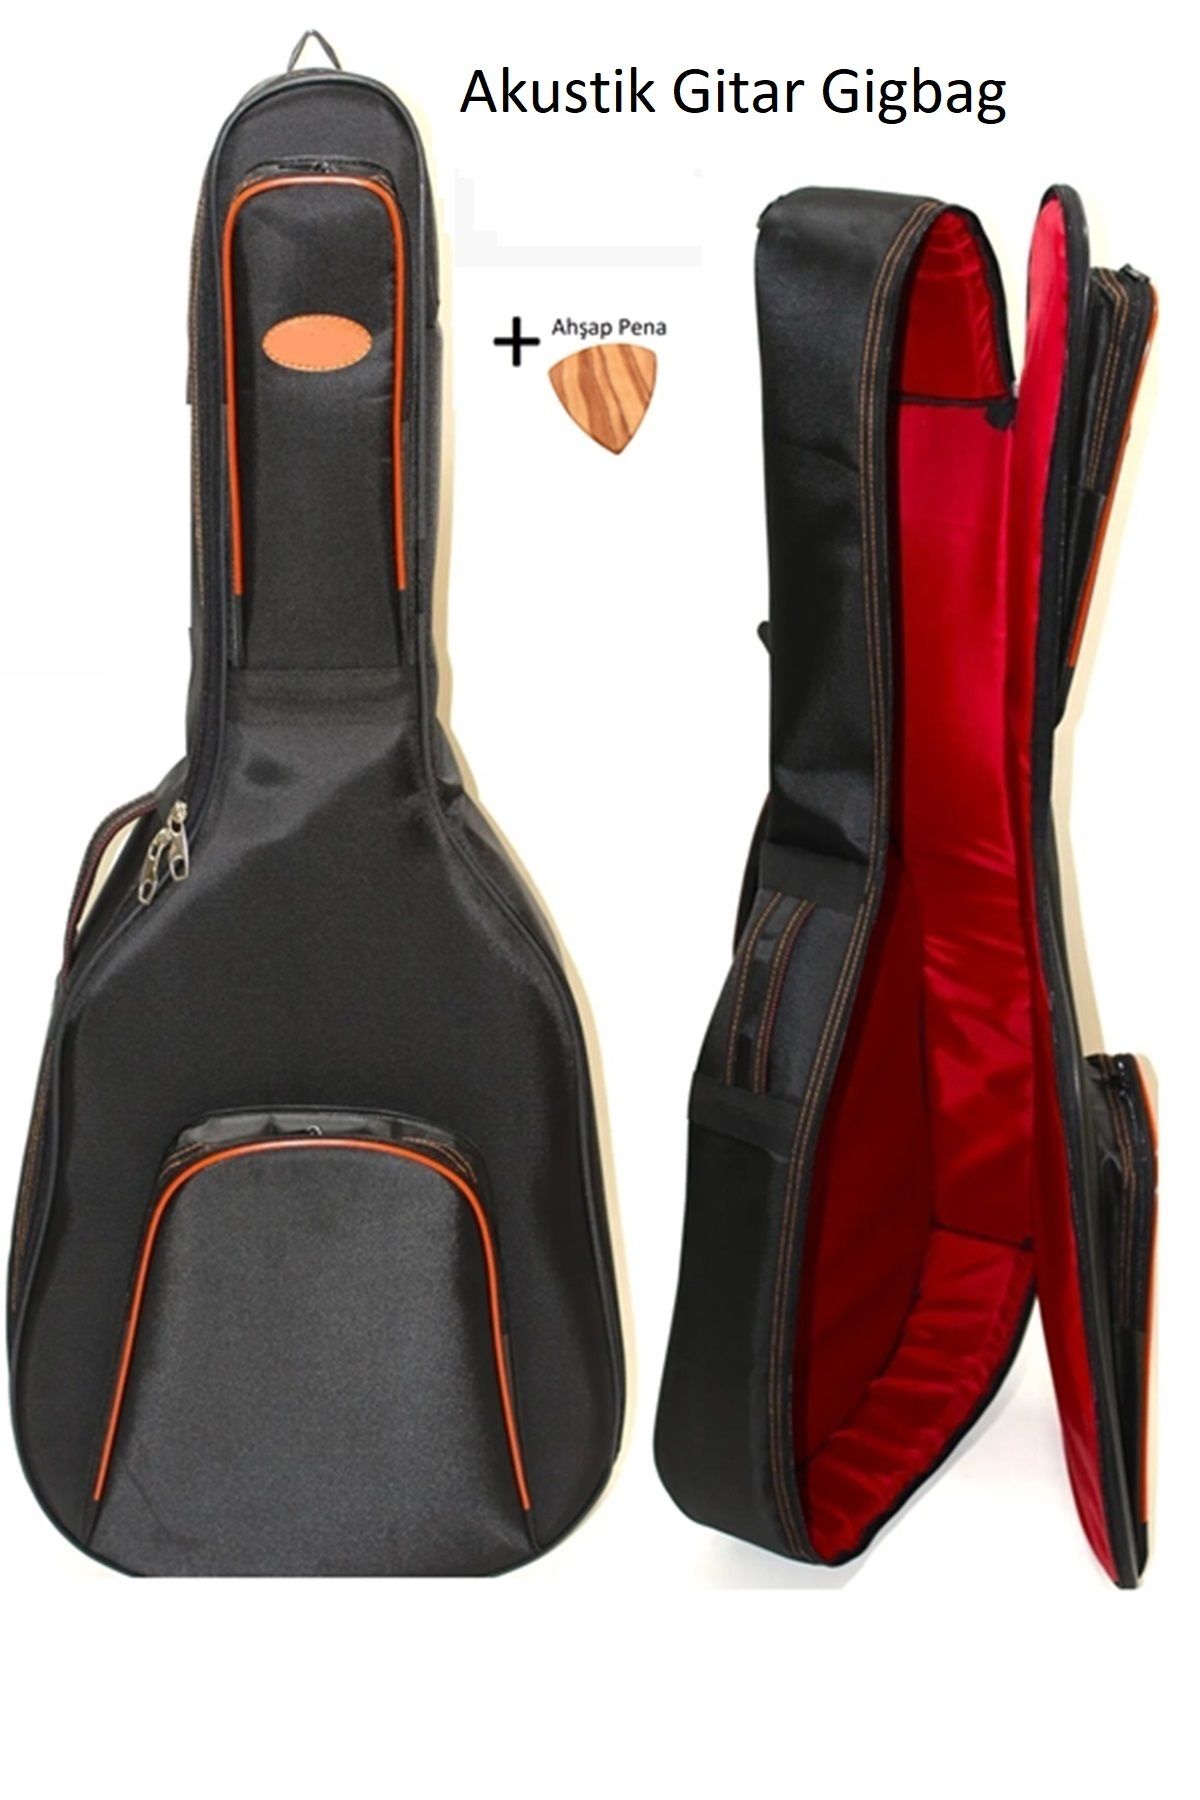 Donizetti Ultra Yüksek Koruma Akustik Gitar Kılıfı Taşıma Çantası Gigbag Soft Case - Tüm Modellere Uyumlu